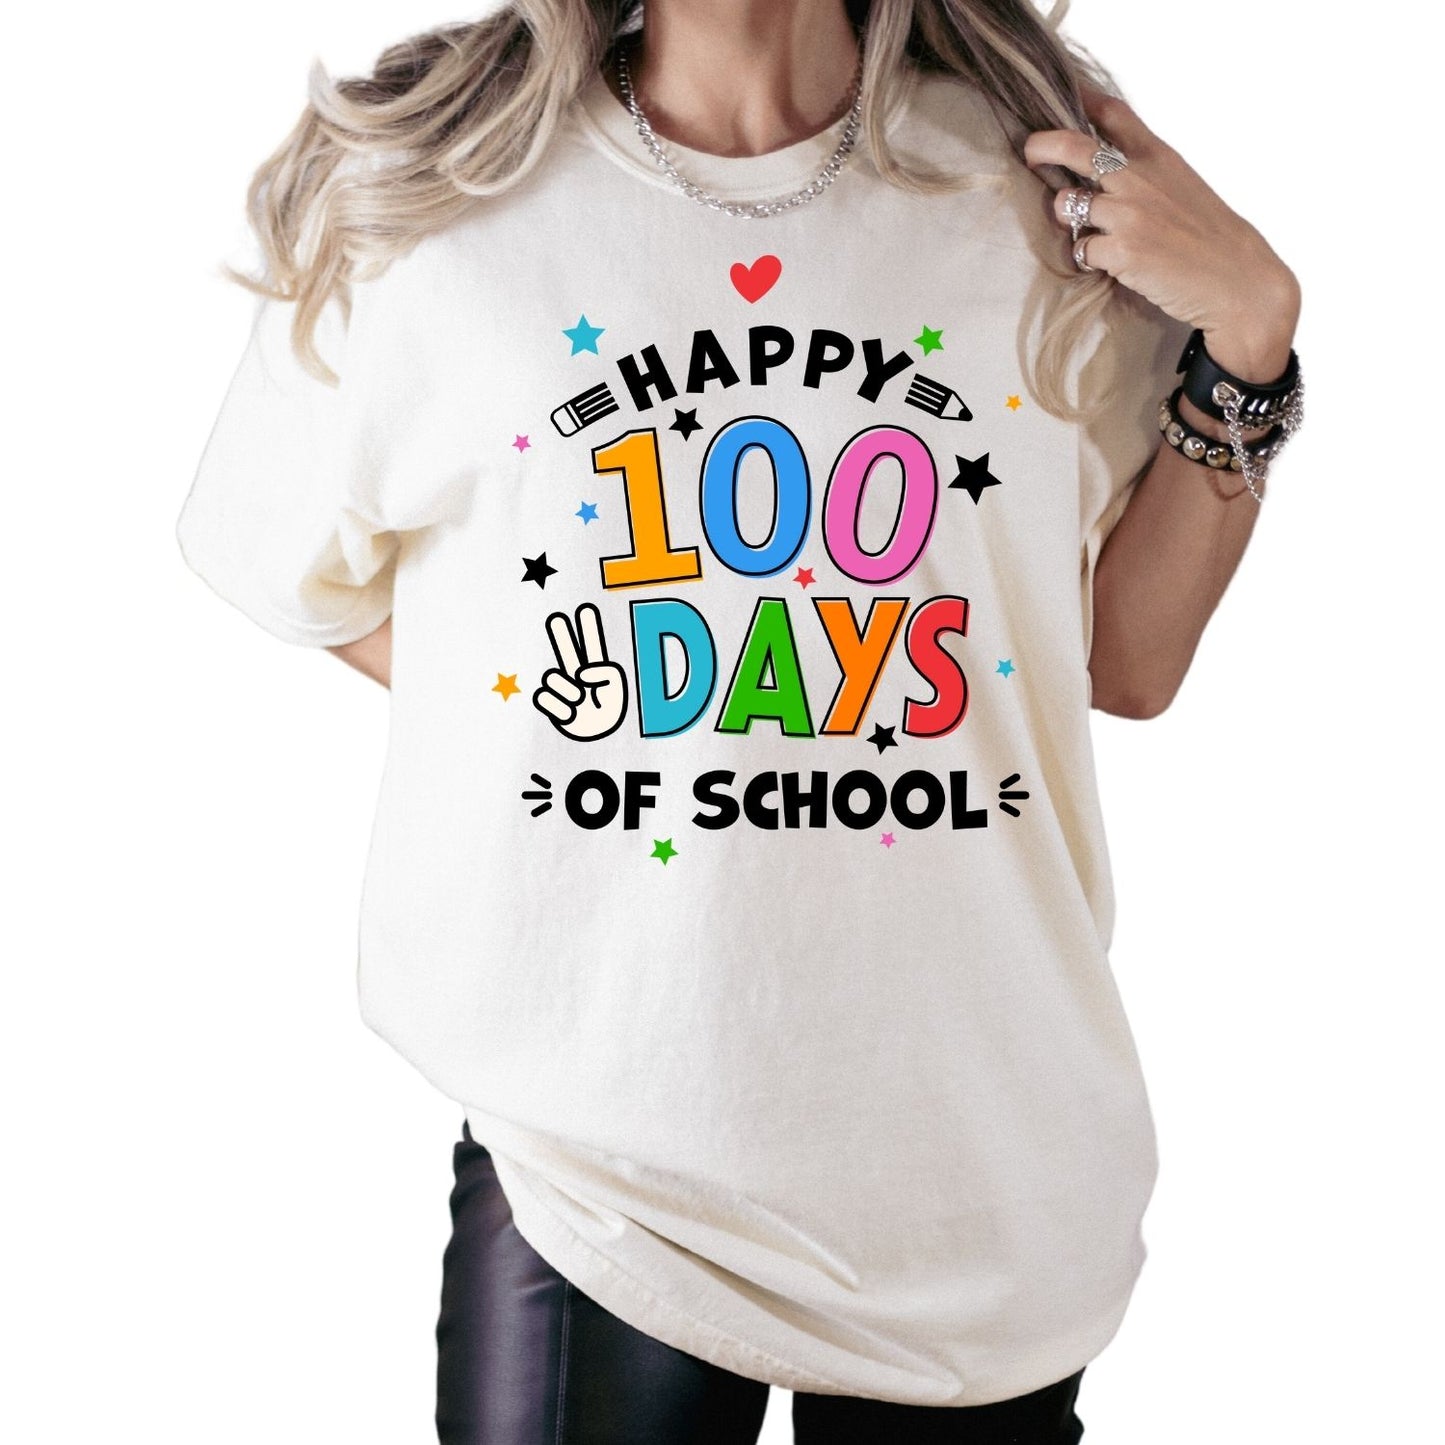 Happy 100 Days of School